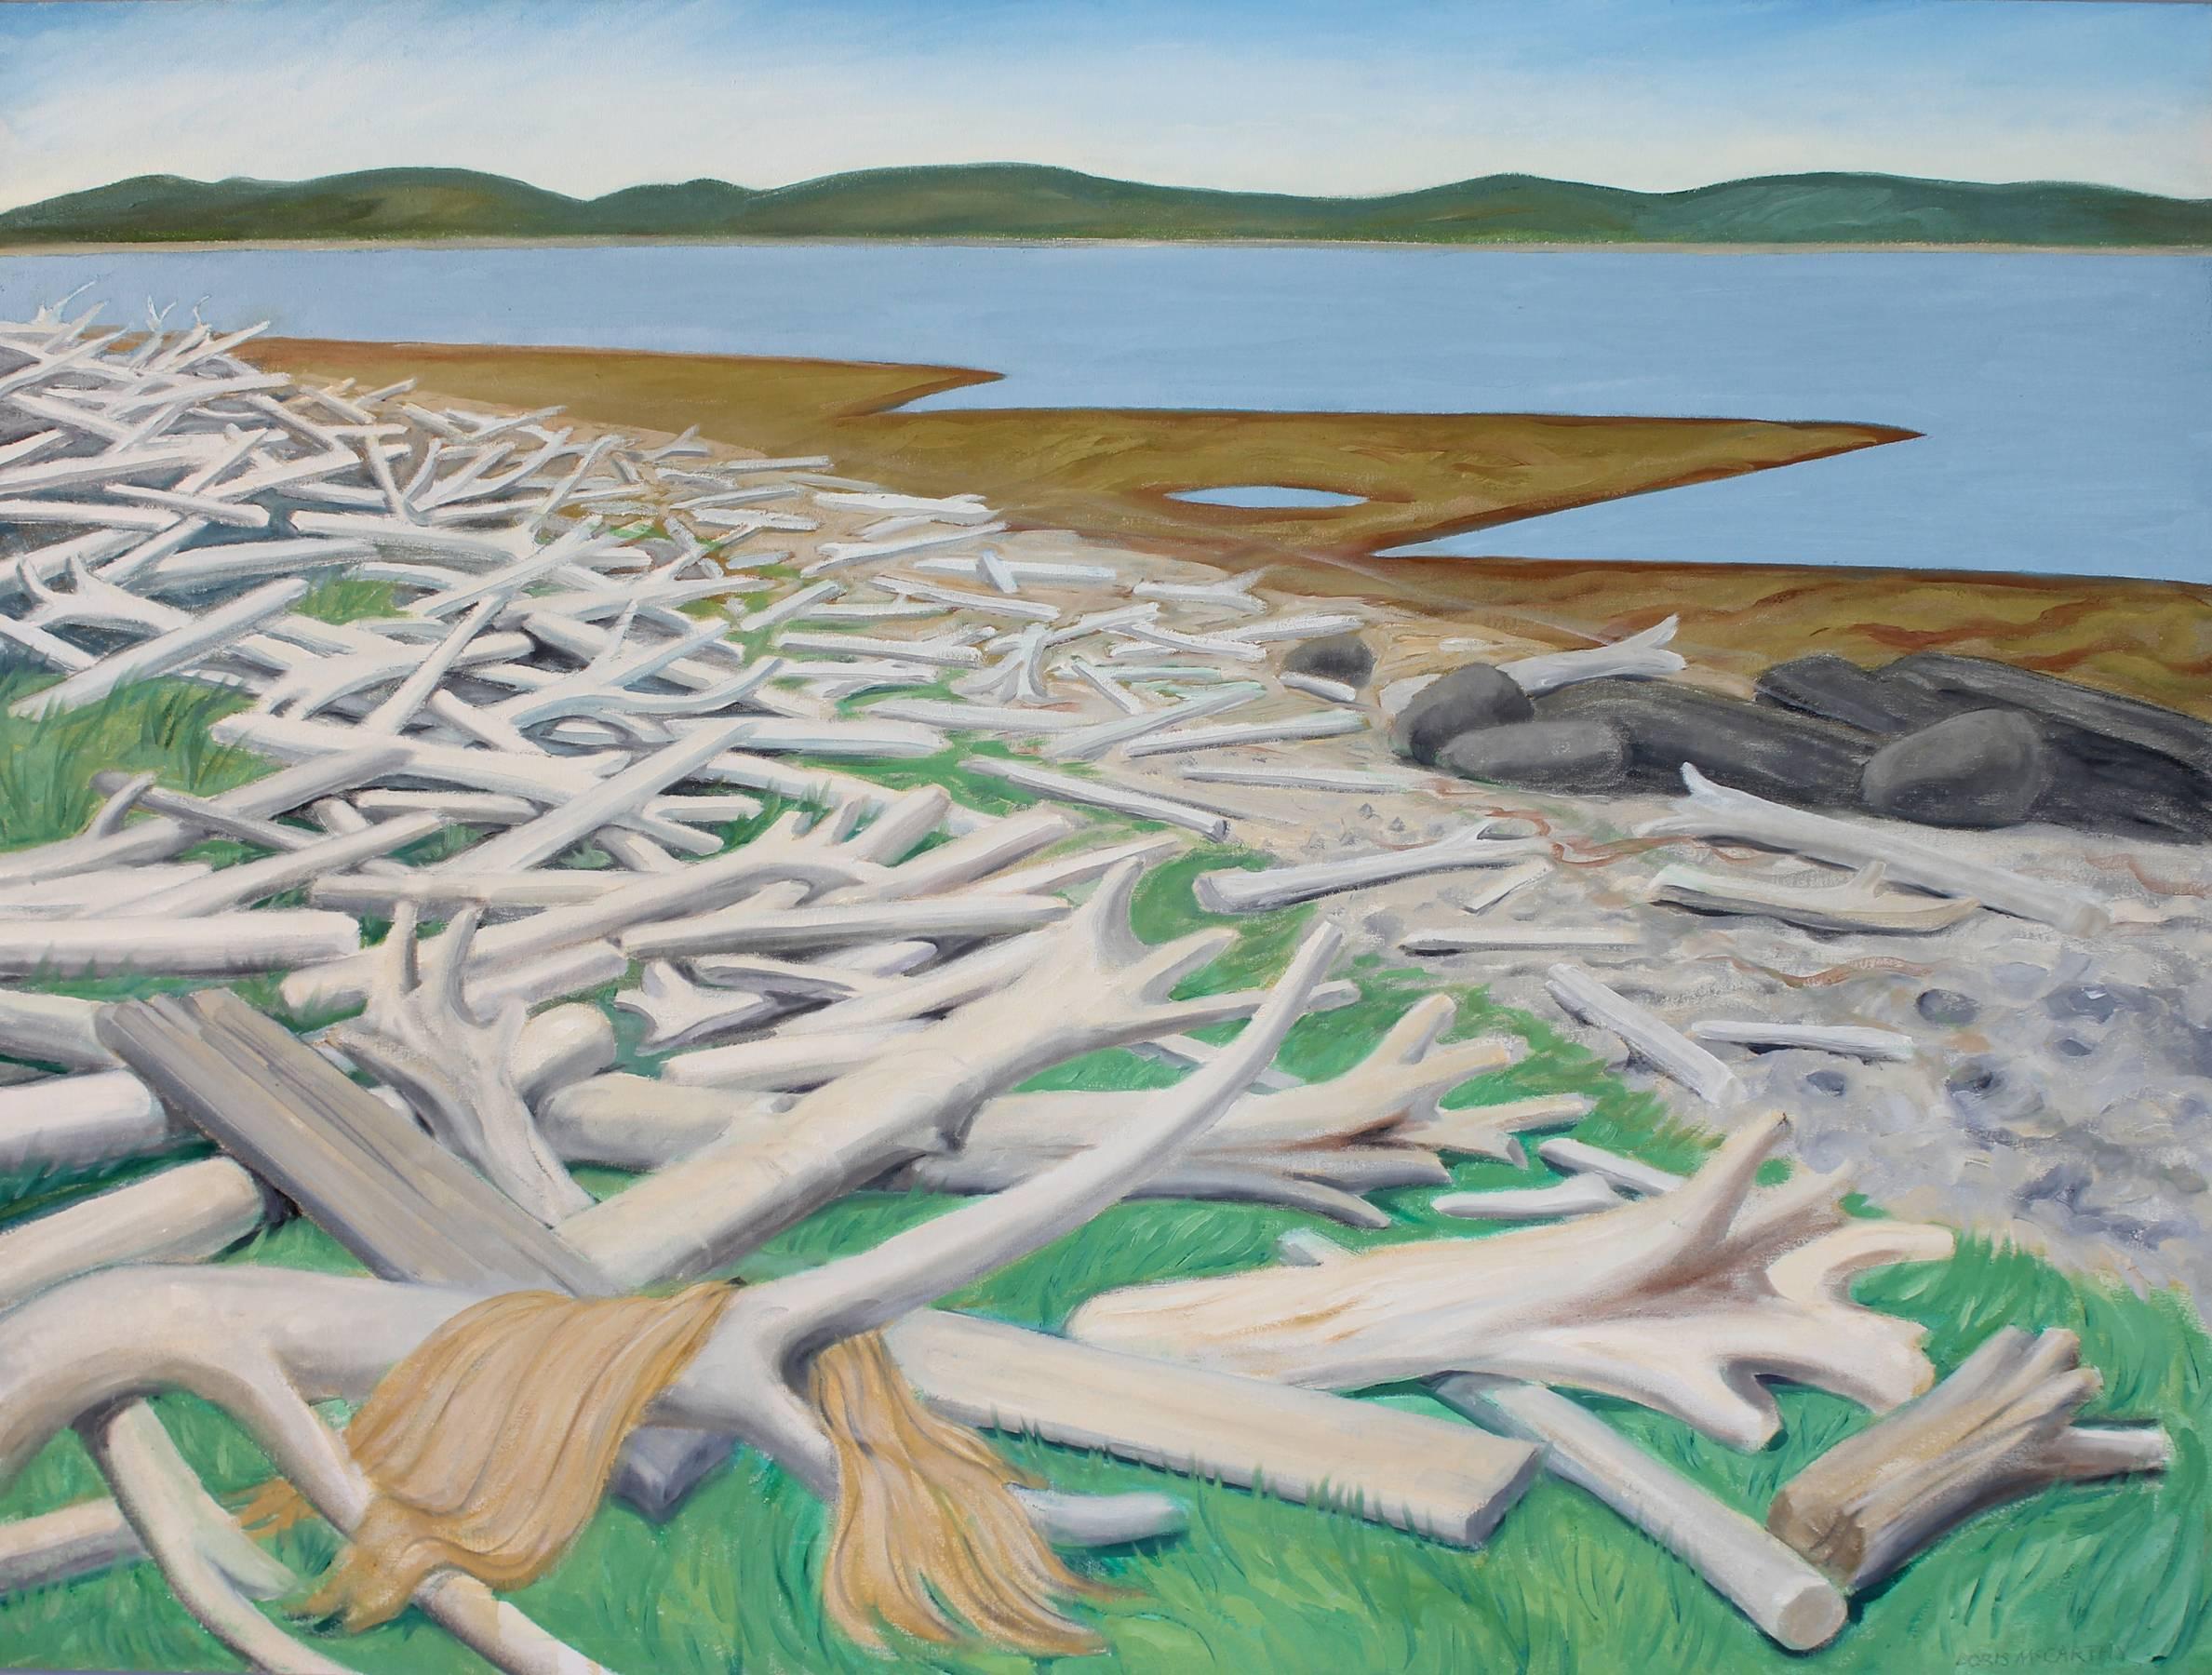 Doris McCarthy Landscape Painting - Driftwood Beach at Port au Choix Newfoundland, landscape oil painting on canvas